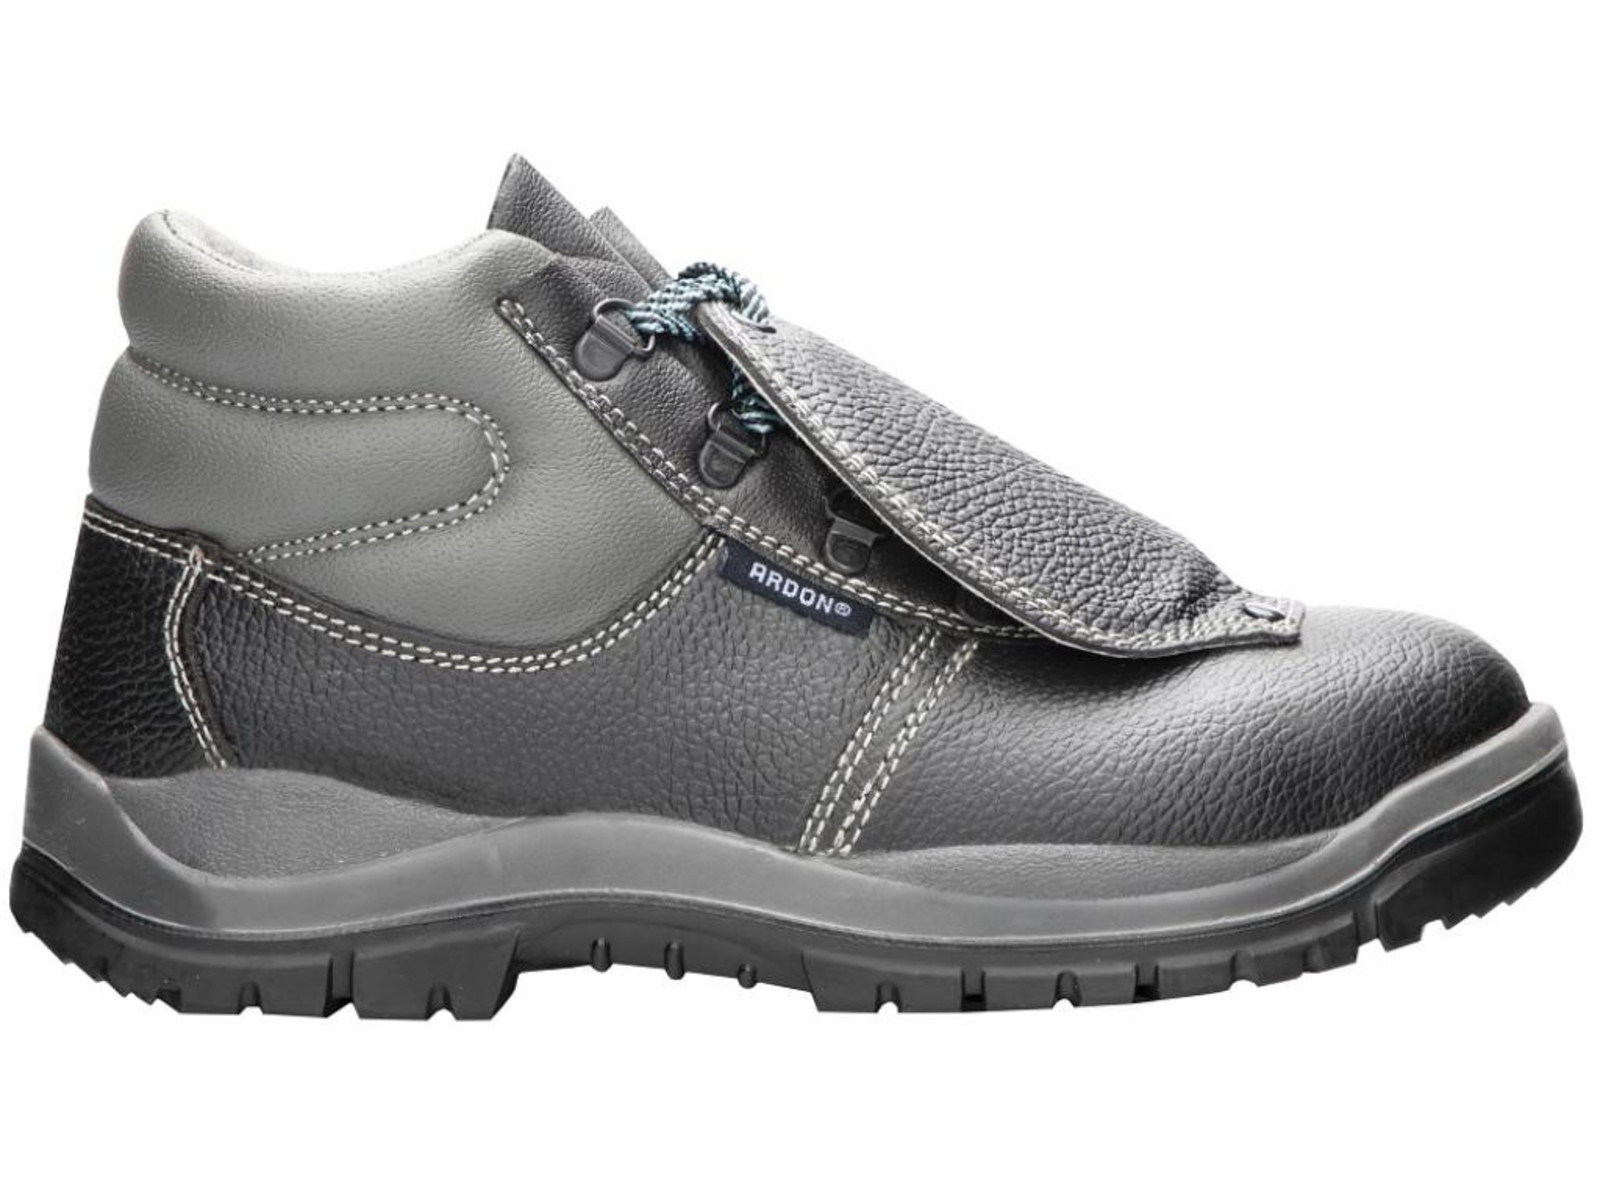 Bezpečnostná obuv ARDON® Integral S1P - veľkosť: 47, farba: sivá/čierna